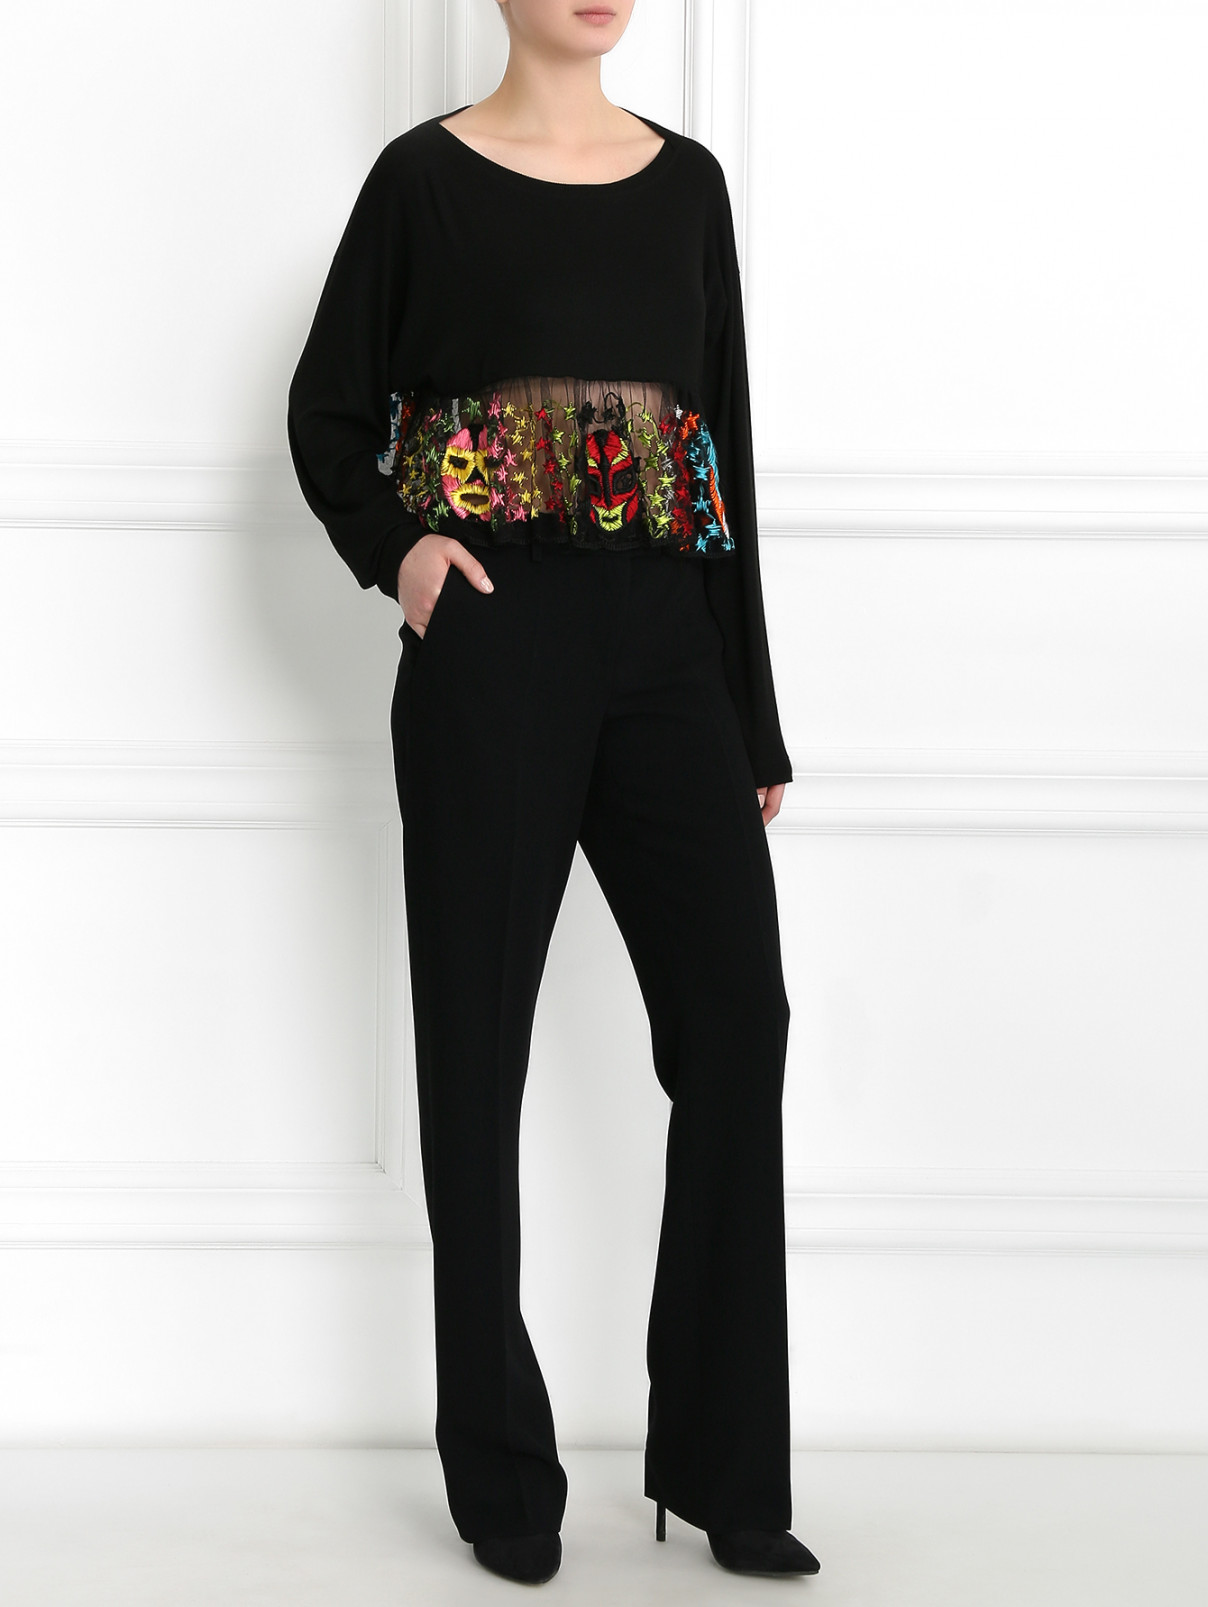 Укороченный топ с кружевными элементами Jean Paul Gaultier  –  Модель Общий вид  – Цвет:  Черный